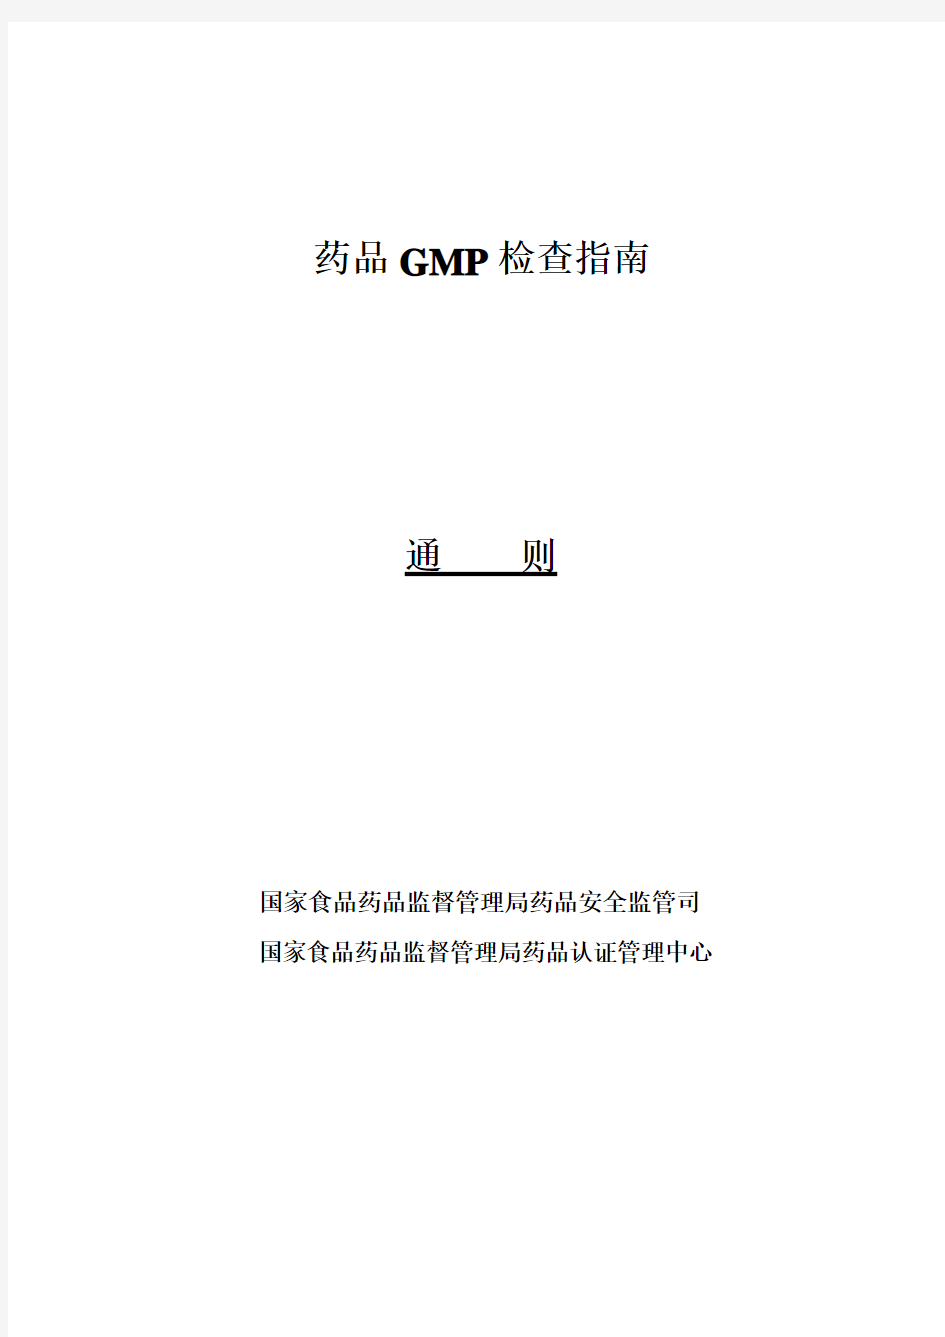 药品GMP指南2010版-药品GMP检查指南(通则)